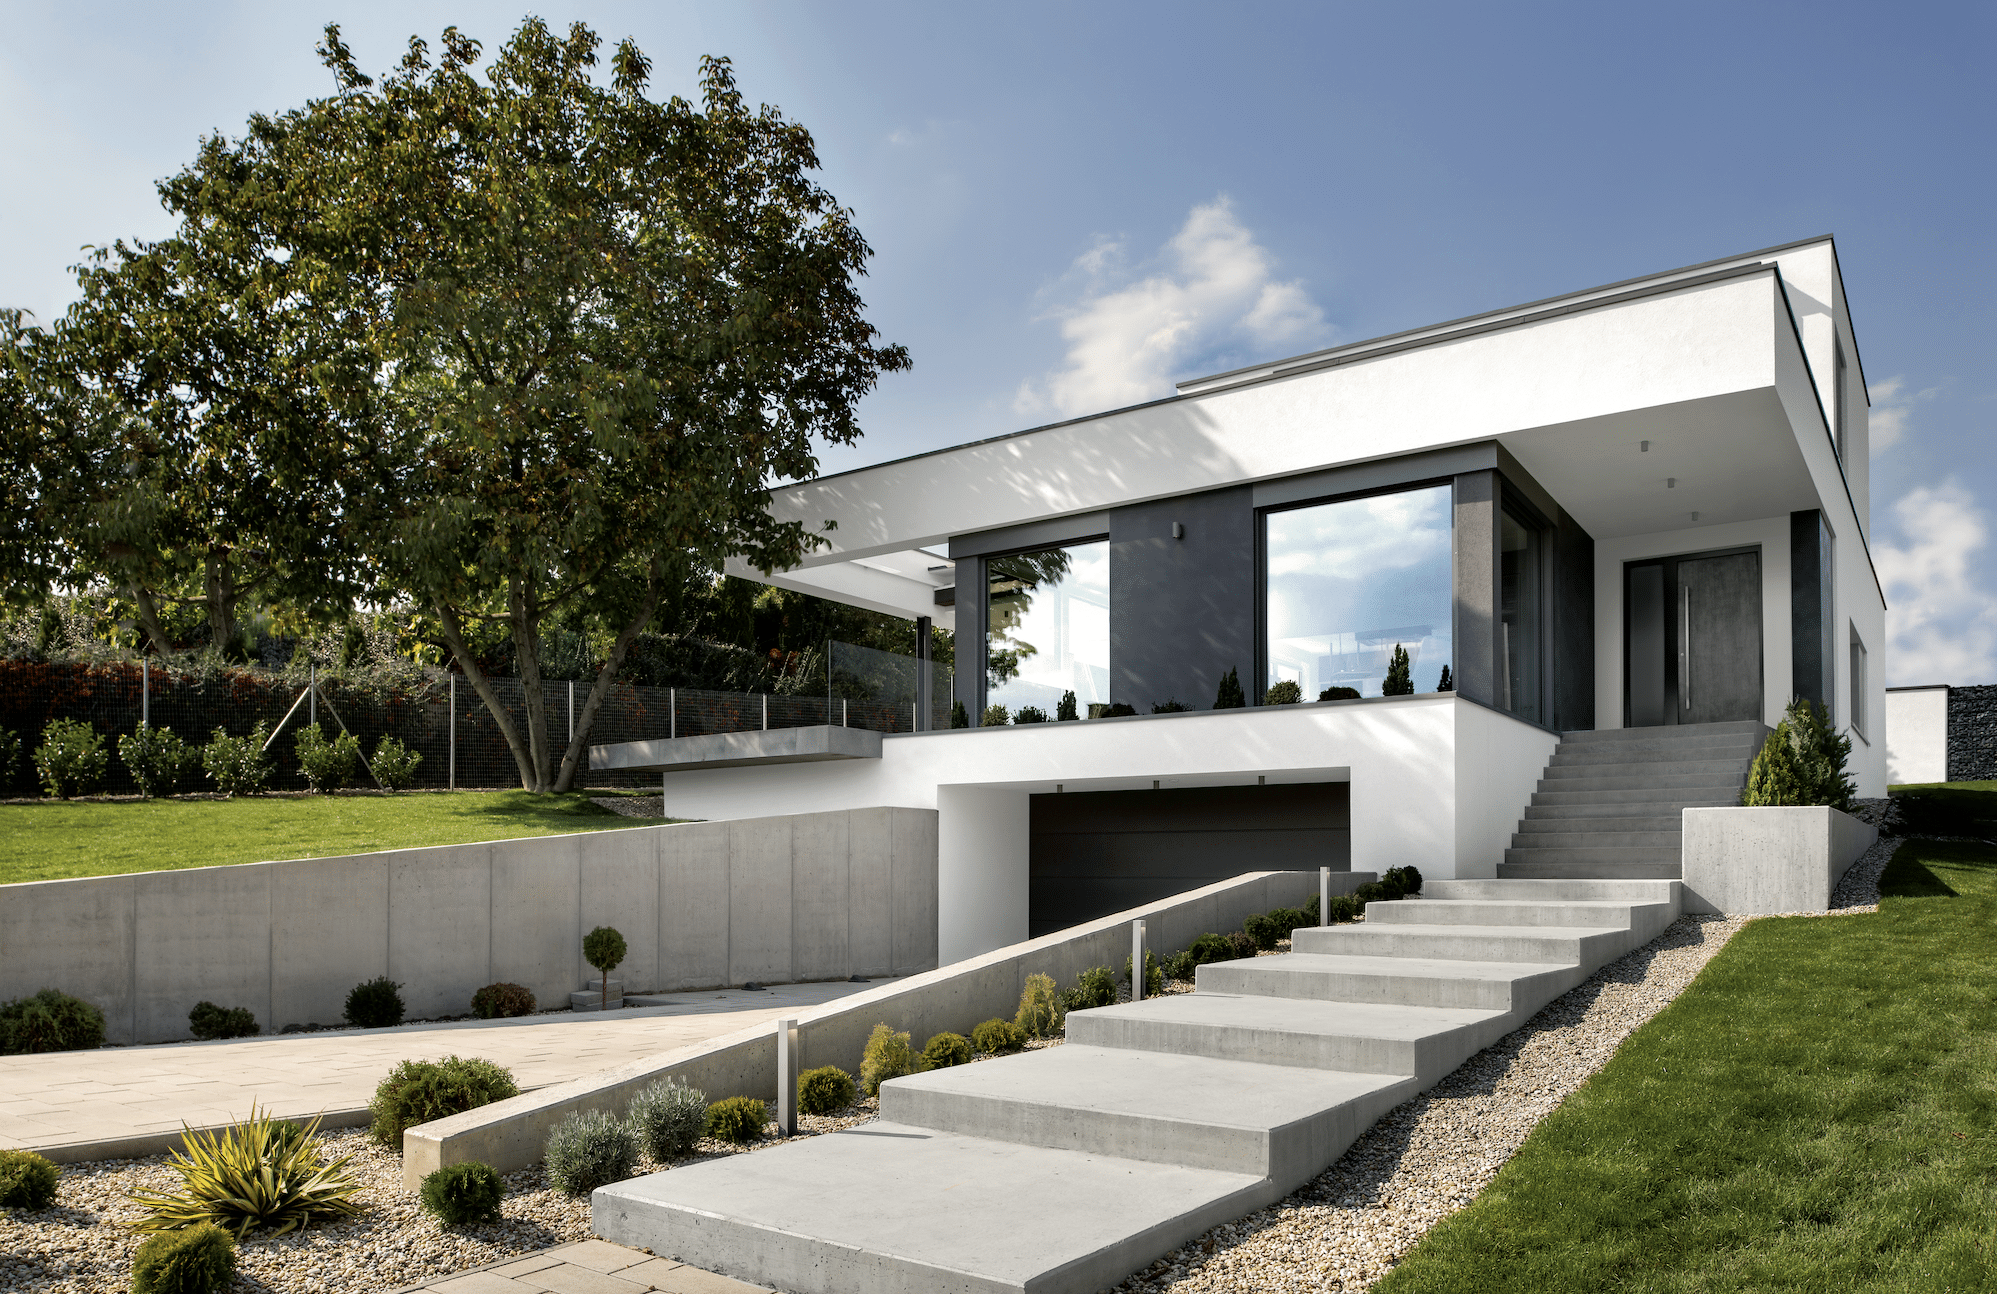 Internorm präsentiert ein modernes Wohnhaus mit Ganzglassystem, Flachdach und einer praktischen Garage.